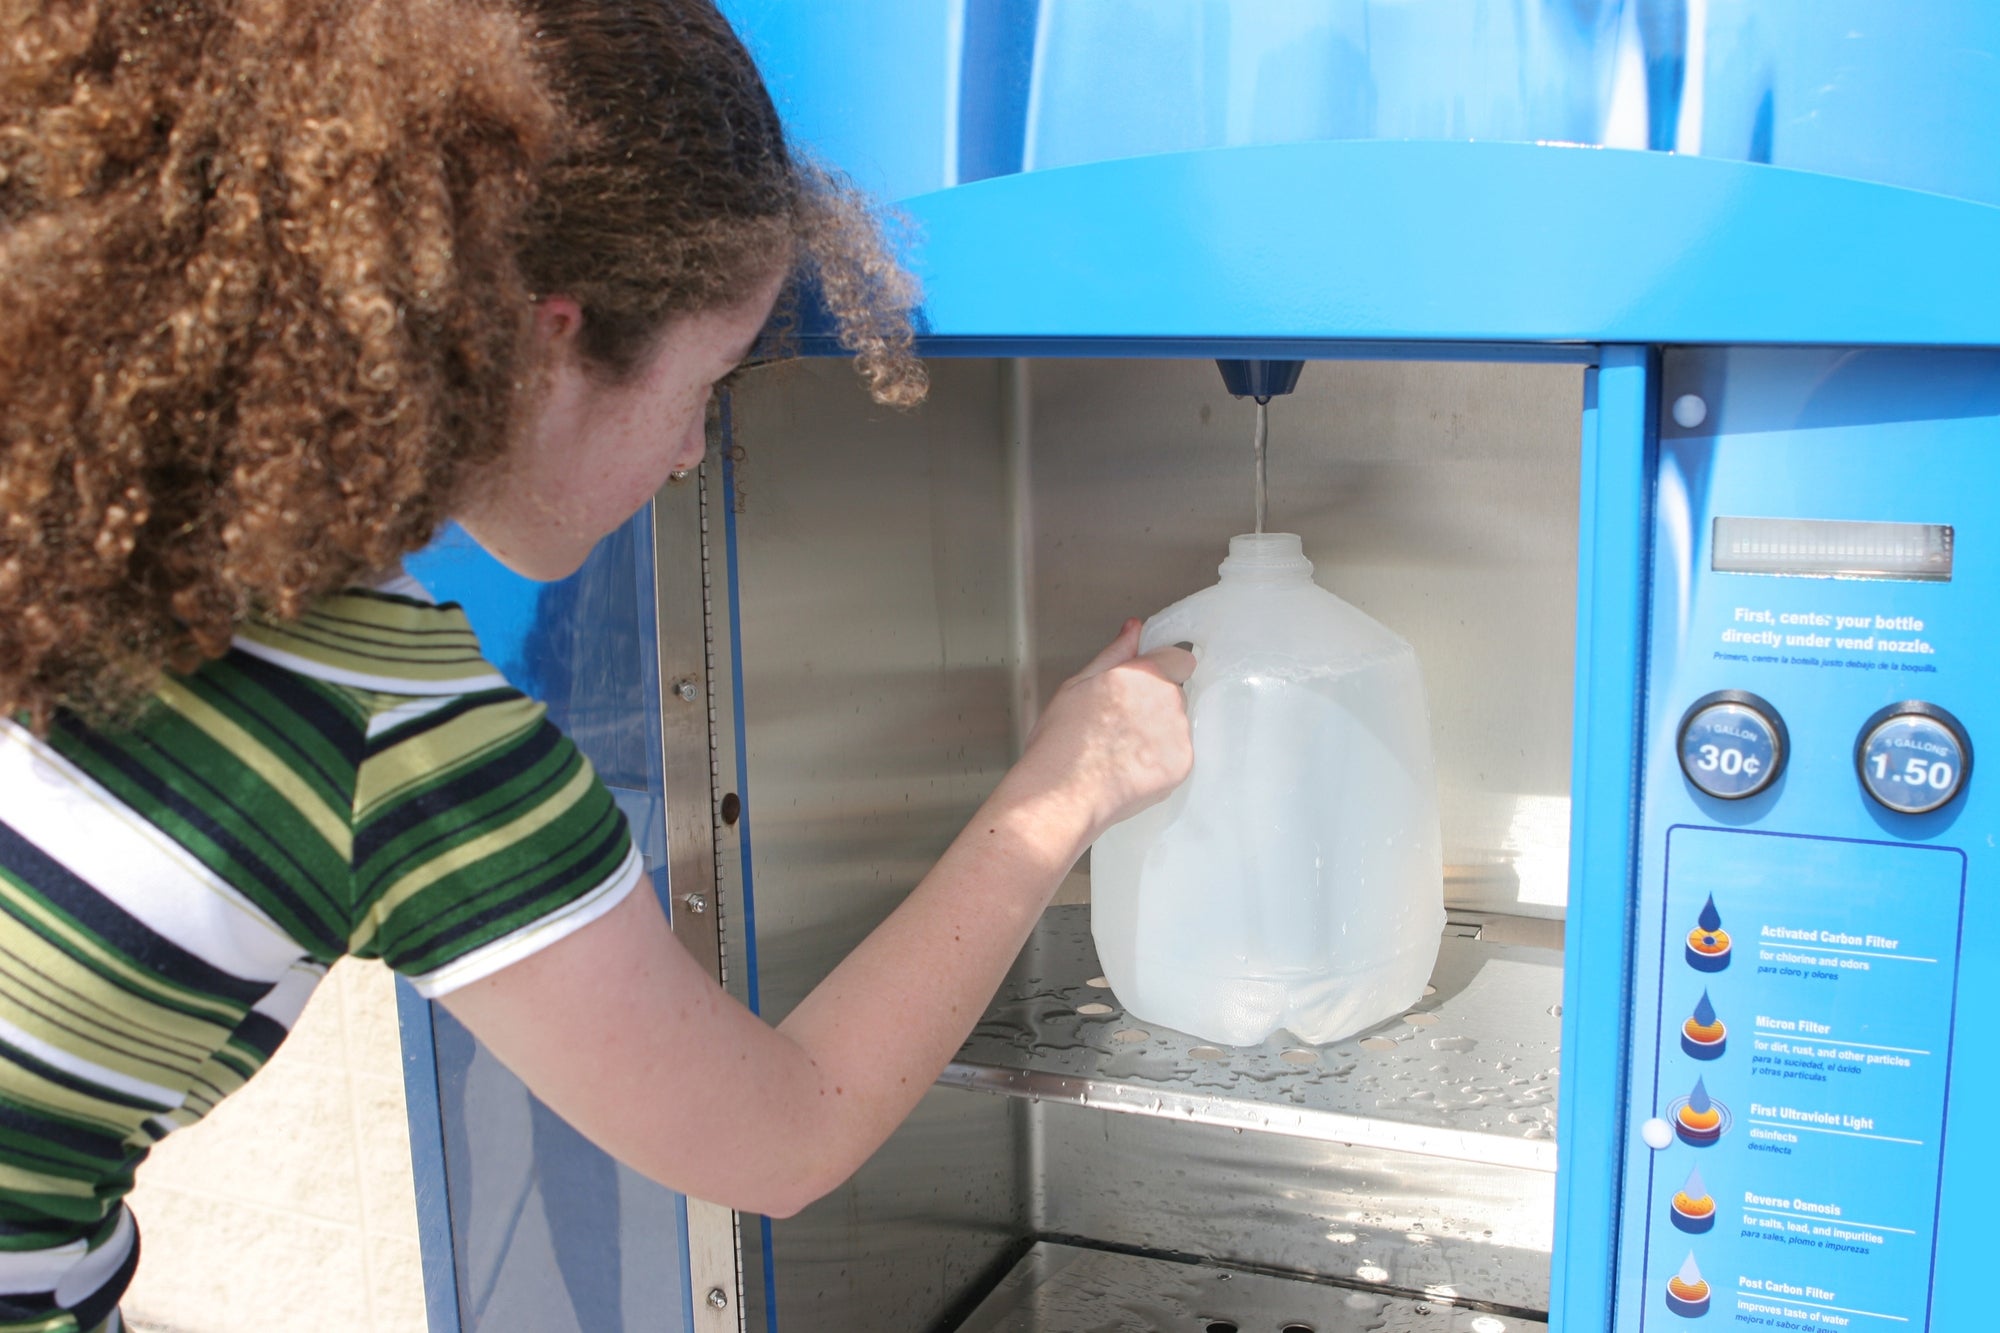 Аппарат для питьевой воды. Аппарат питьевой воды. Питьевая вода из аппарата. Торговый автомат питьевой воды. Точка питьевой воды.